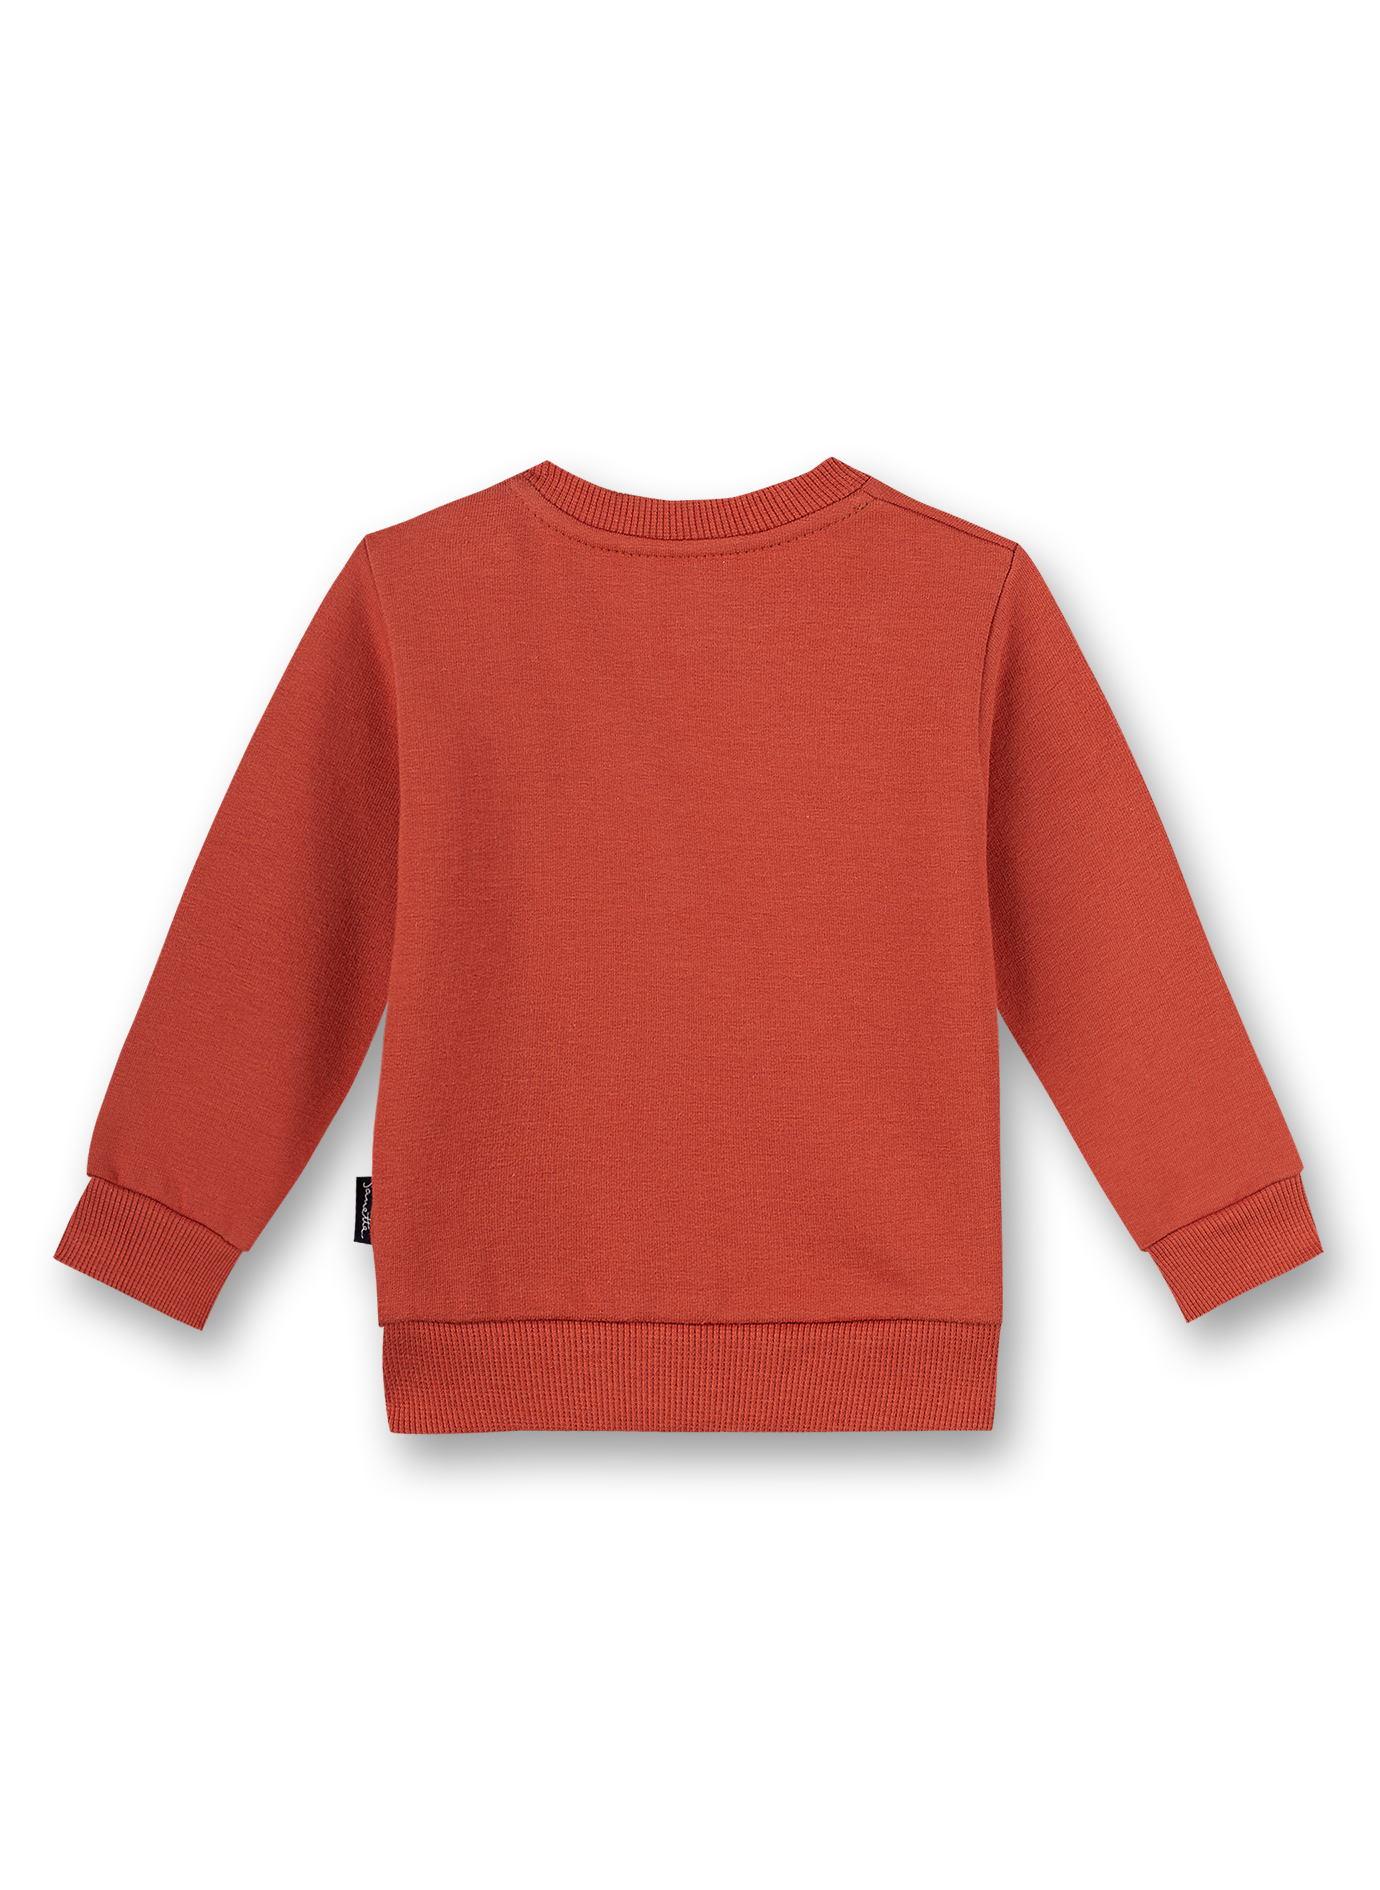 Jungen-Sweatshirt Rot Little Car